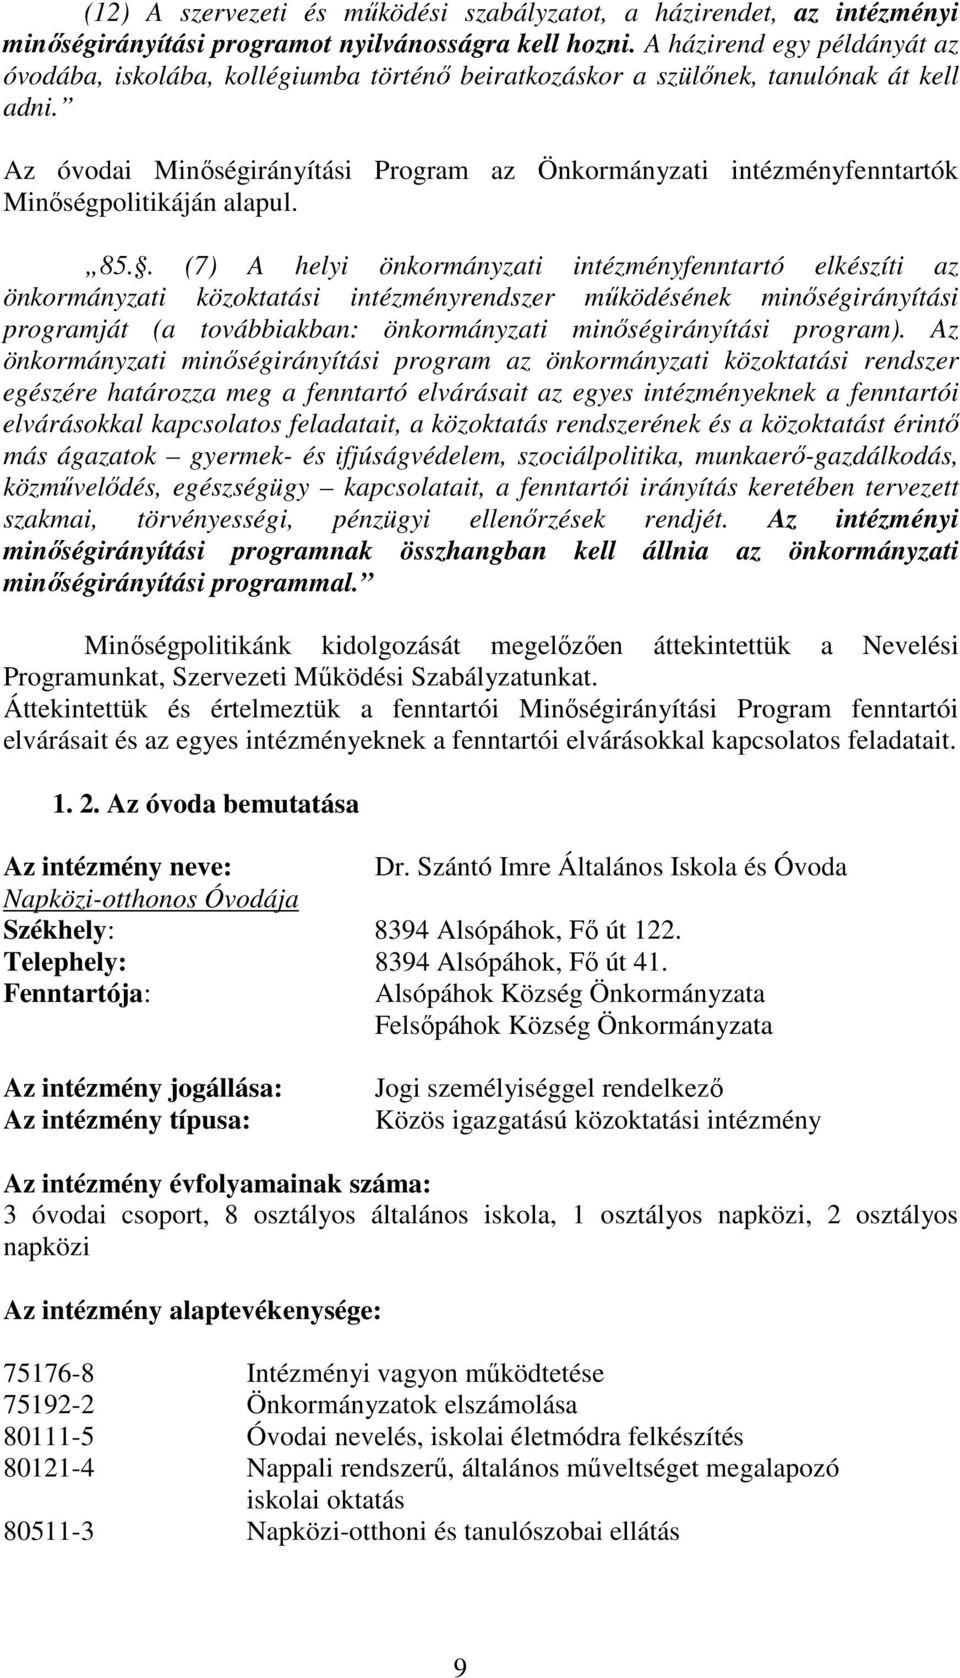 Az óvodai Minıségirányítási Program az Önkormányzati intézményfenntartók Minıségpolitikáján alapul. 85.